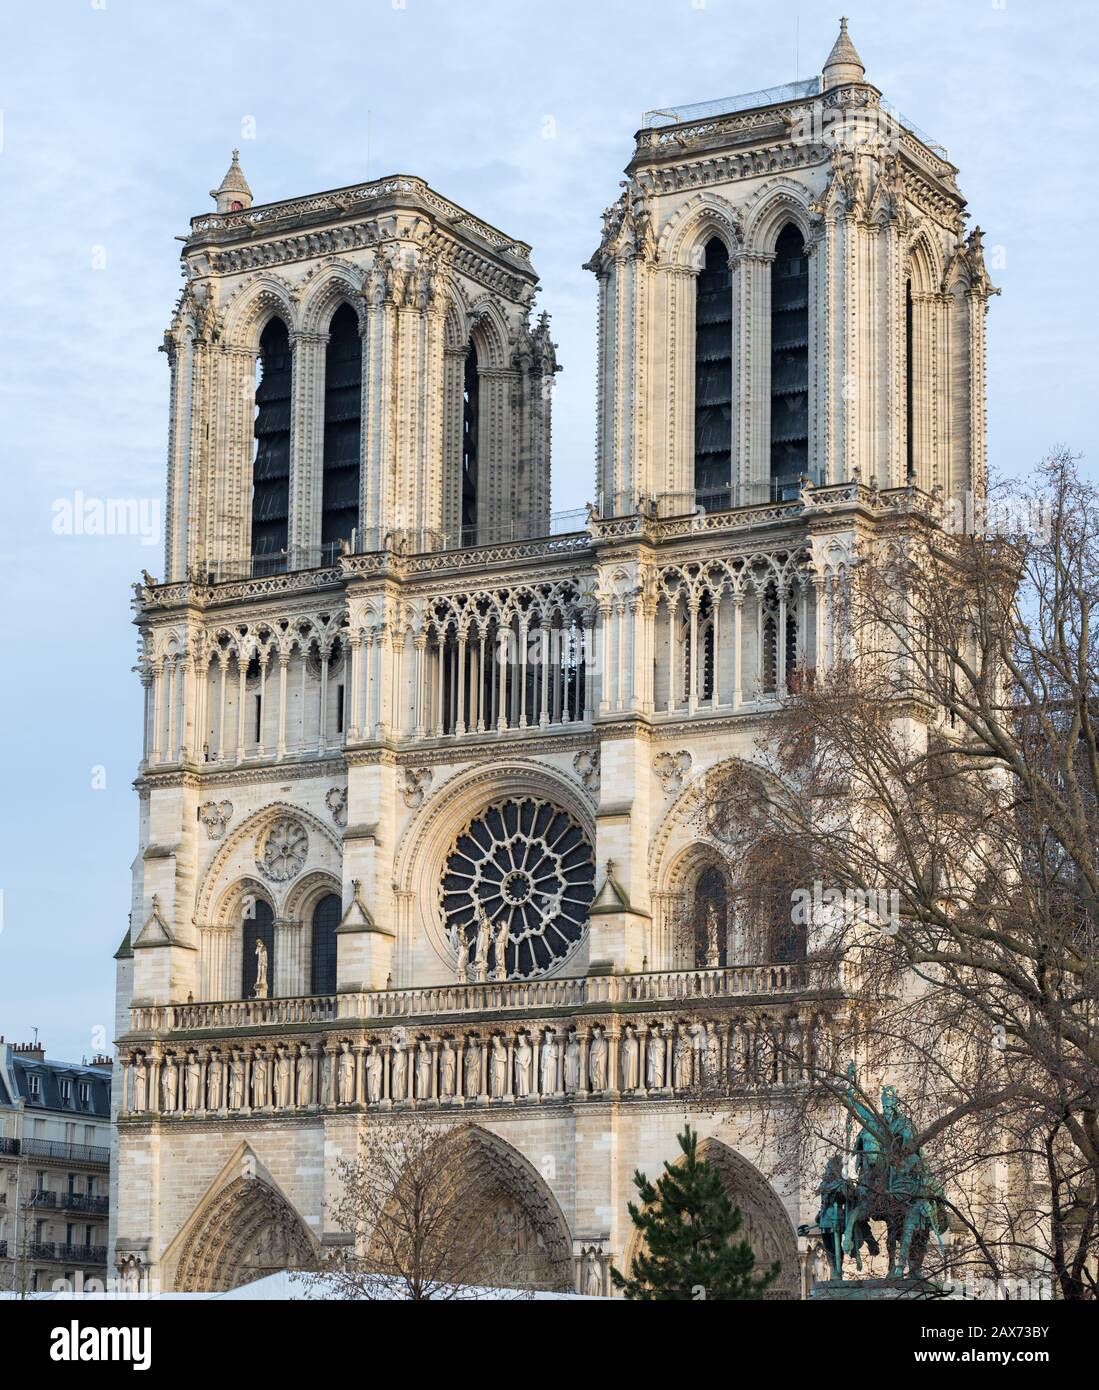 Hochauflösendes Porträtfoto der beiden Türme von Notre Dame. In der Mitte eines der sogenannten Rosenfenster. Katholische, gothische Kathedrale. Stockfoto